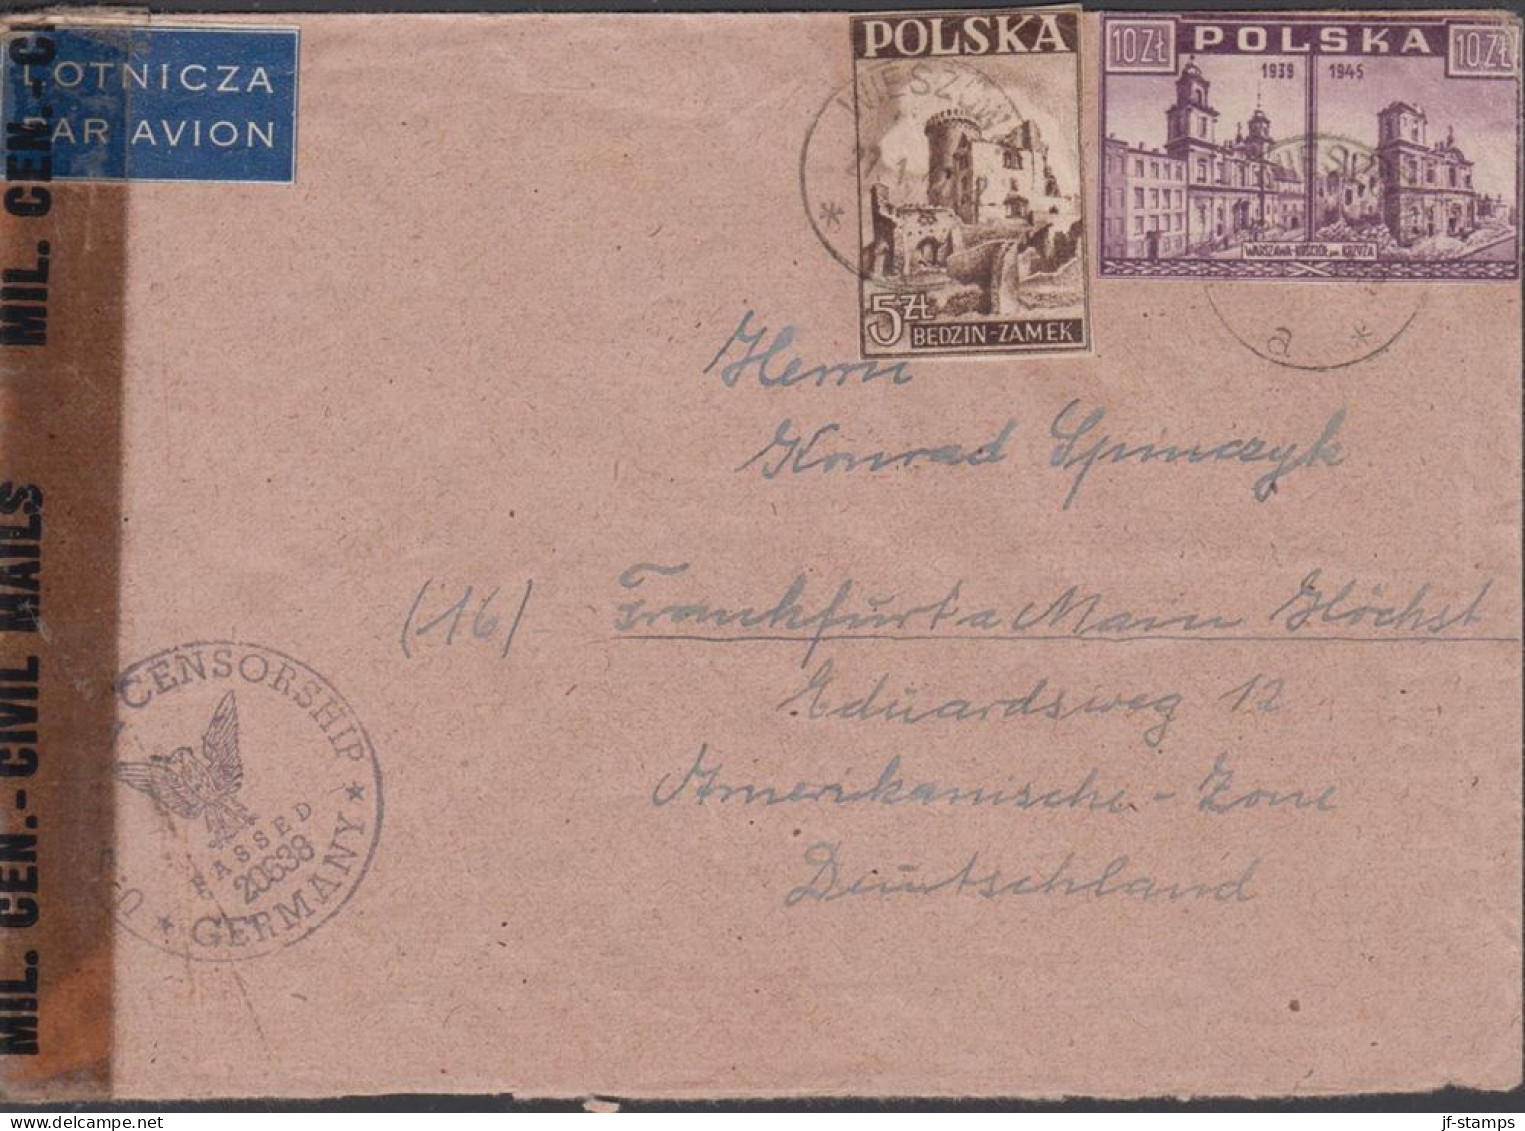 1947. POLSKA. 10 Zl. WARSZAWA + ZL 5 On Censored Cover To Germany Cancelled WIESZOW 27. 1. 4... (Michel 419+) - JF438546 - Regering In Londen(Ballingschap)